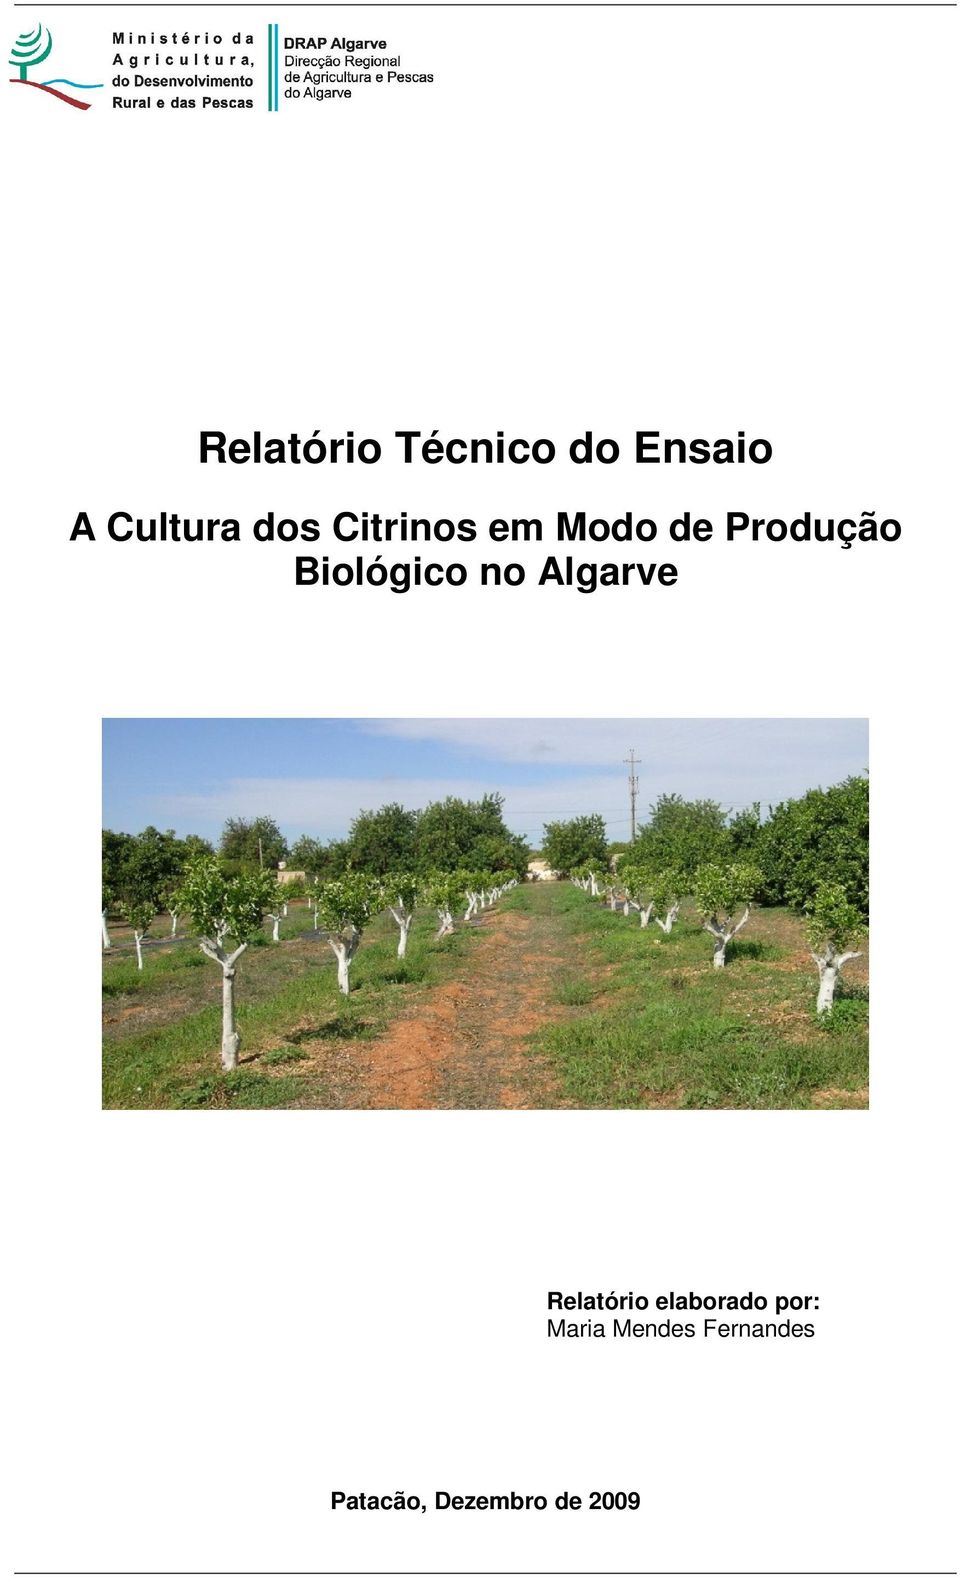 Biológico no Algarve Relatório elaborado